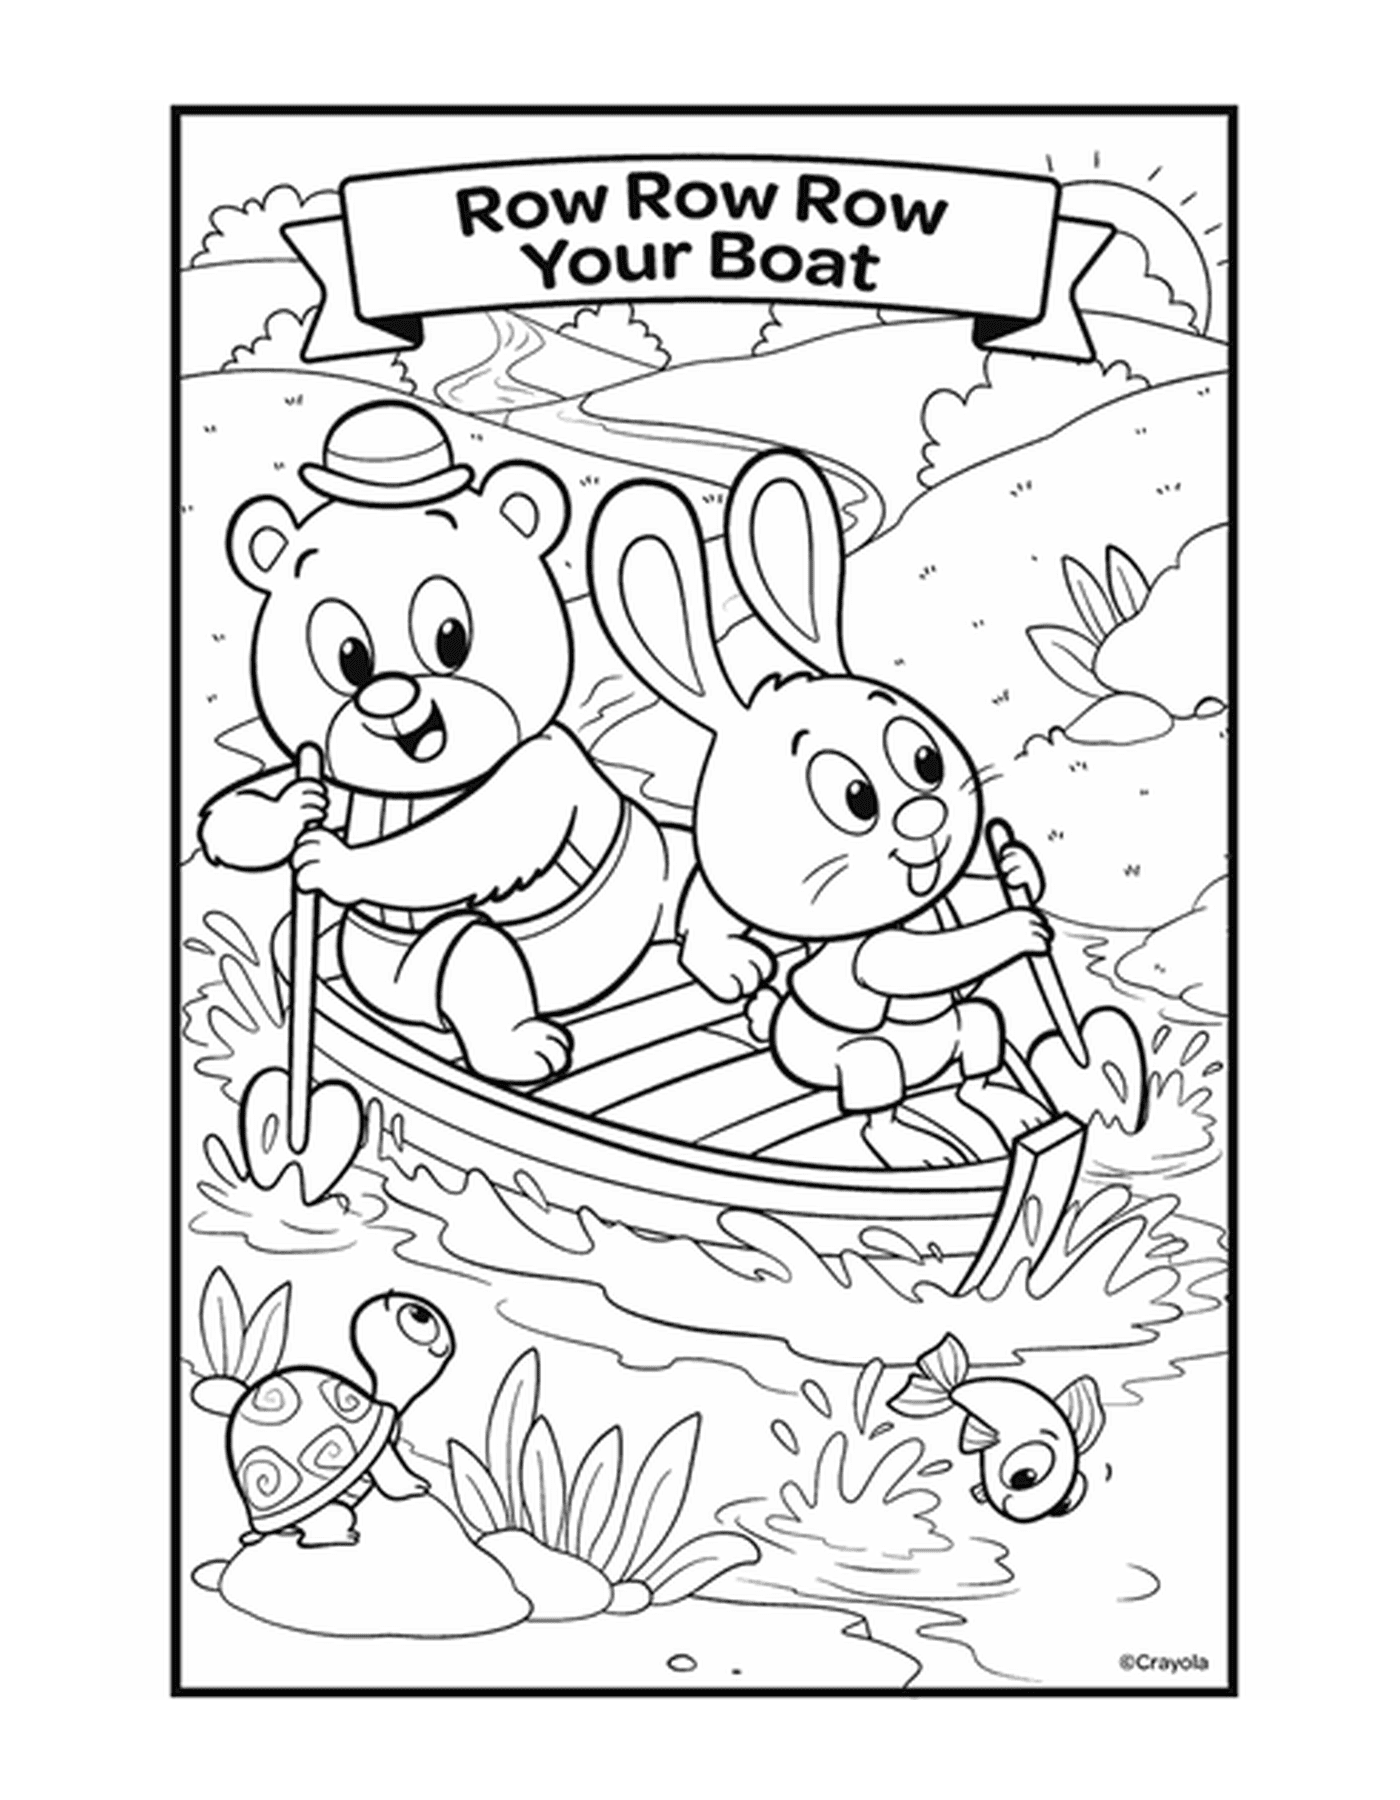  划船,划,划,划,划你的船 船上有两只动物在水上 